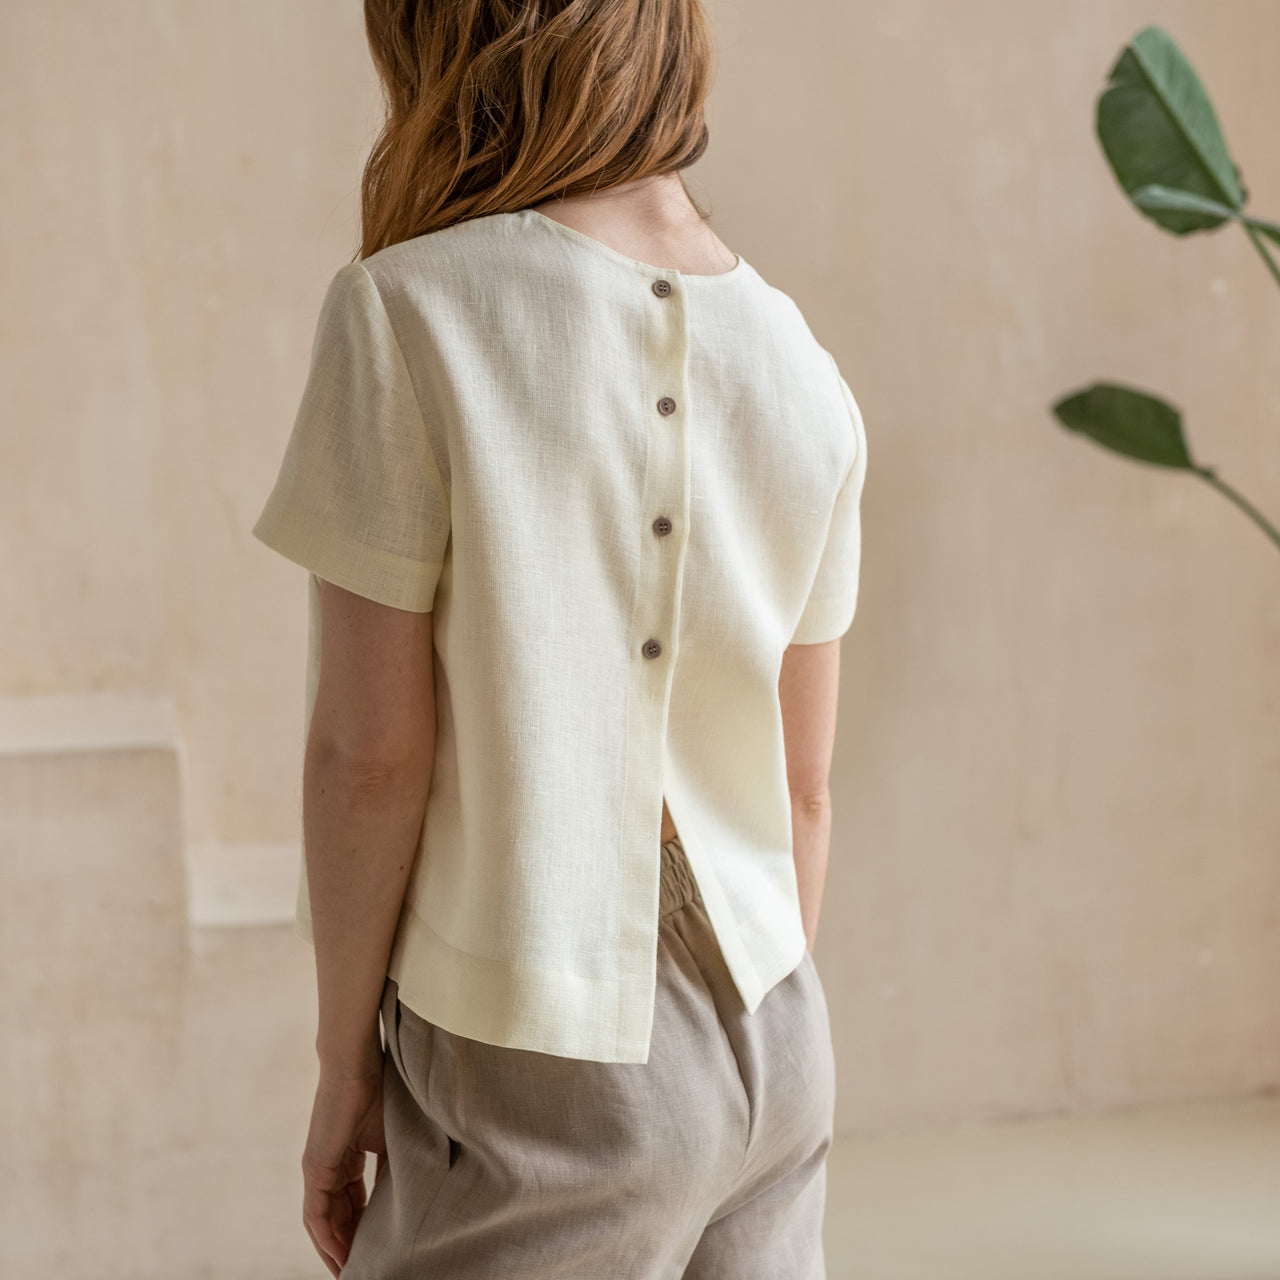 Linen Tops & Shirts - Ready-Made & Custom Natural Linen Tops